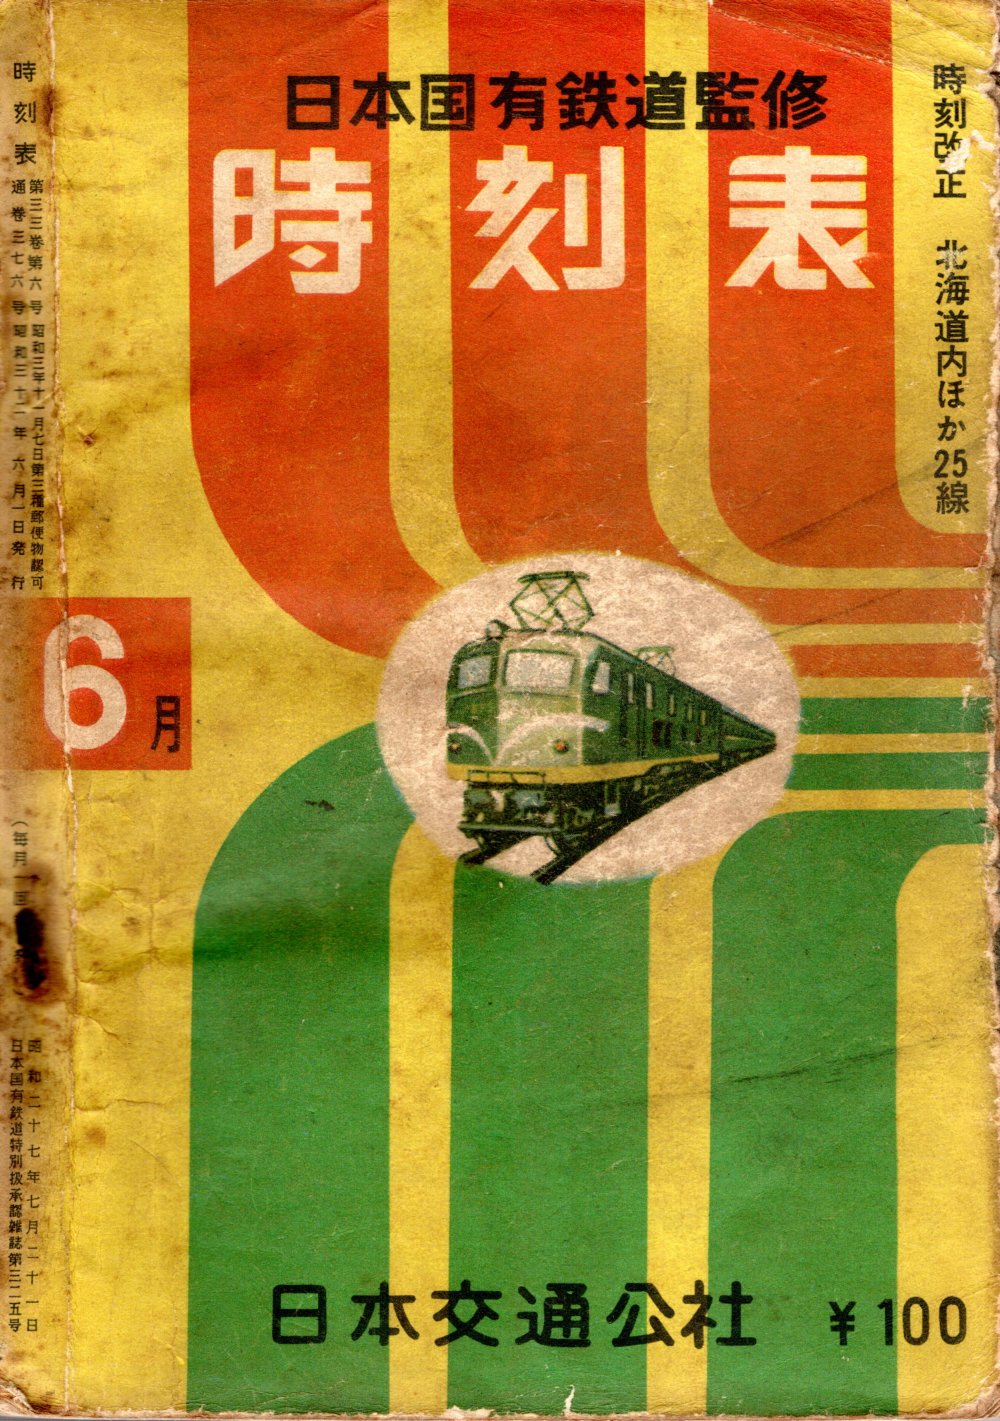 JTB時刻表1957年6月号